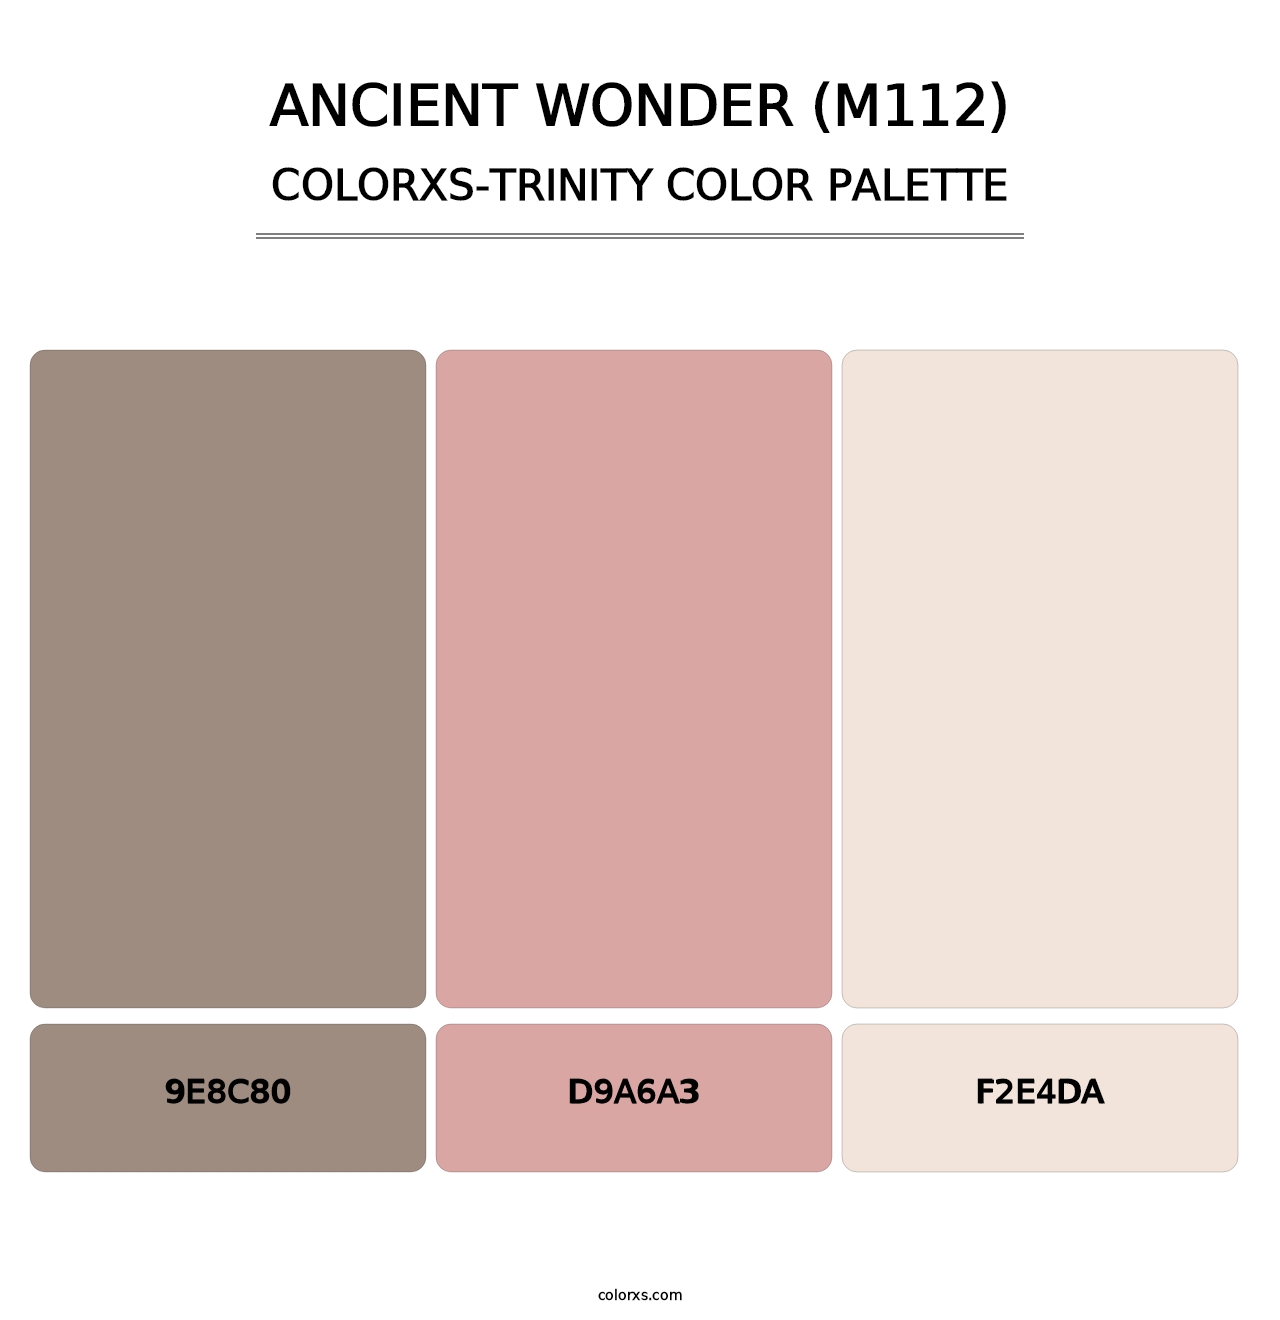 Ancient Wonder (M112) - Colorxs Trinity Palette